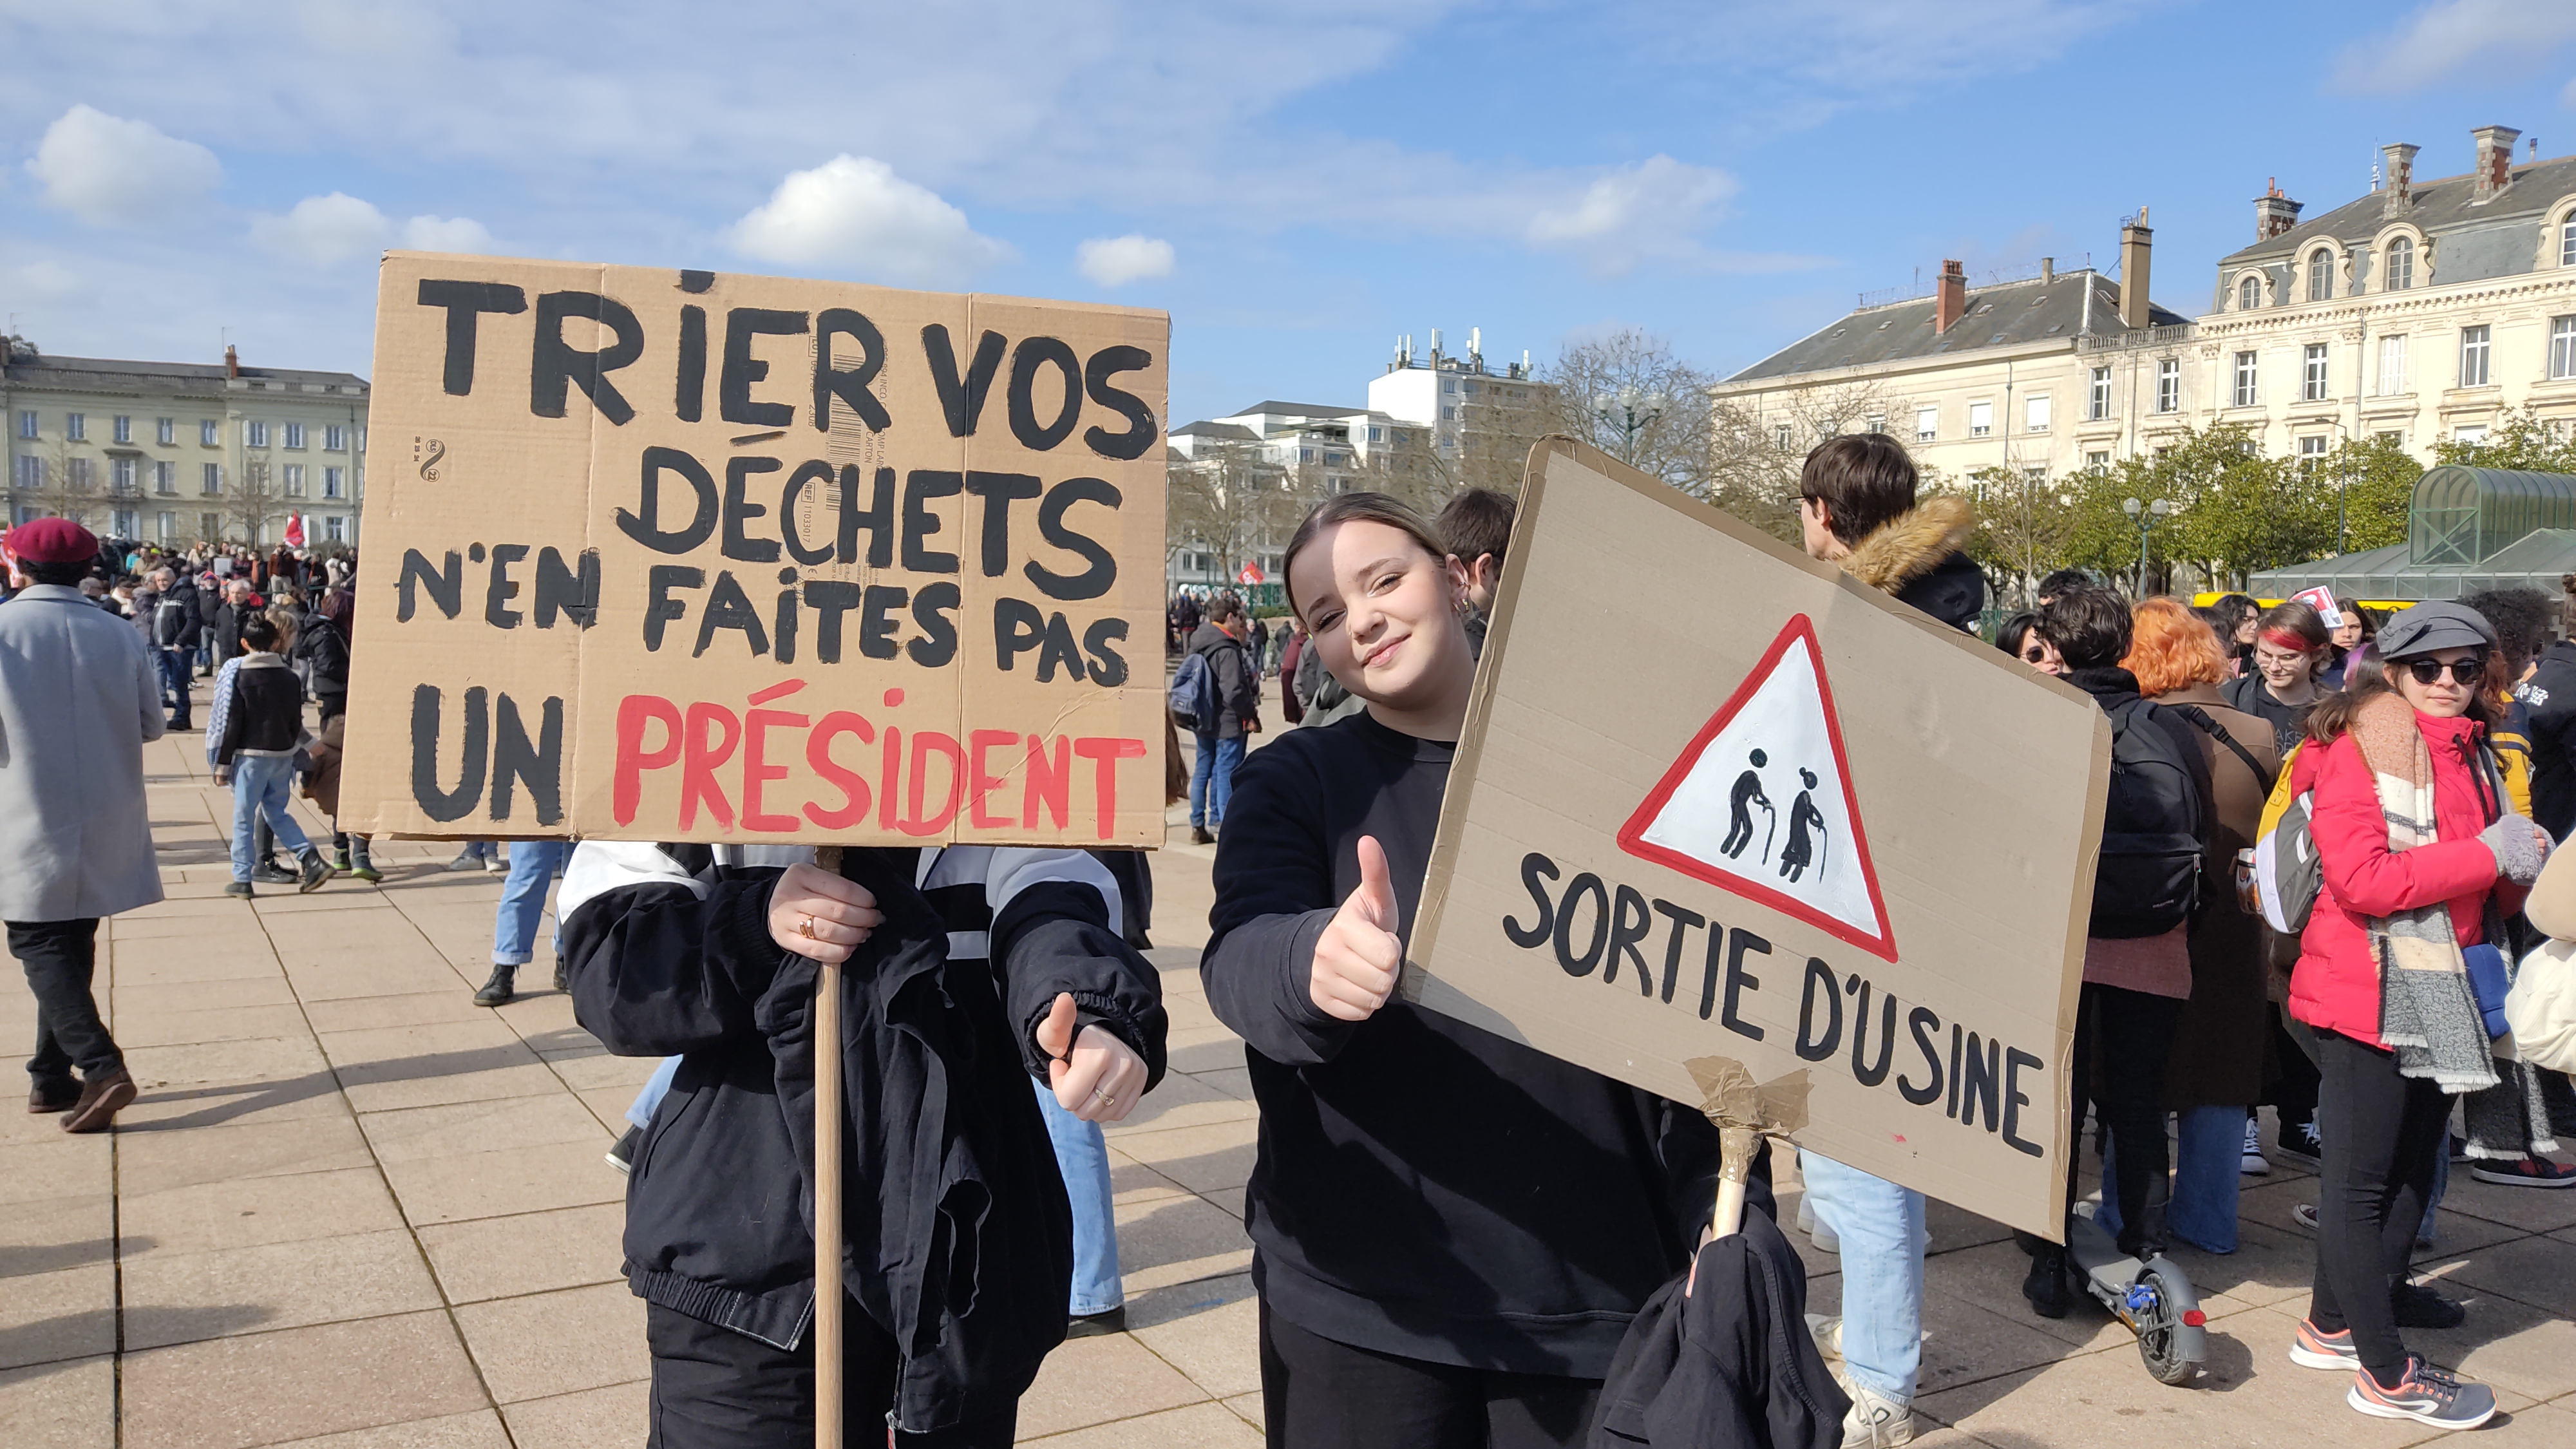 Maïwenn et Rani, élèves au lycée Chevrollier à Angers, manifestent depuis le début du mouvement contre la réforme des retraites. ©RCF Anjou